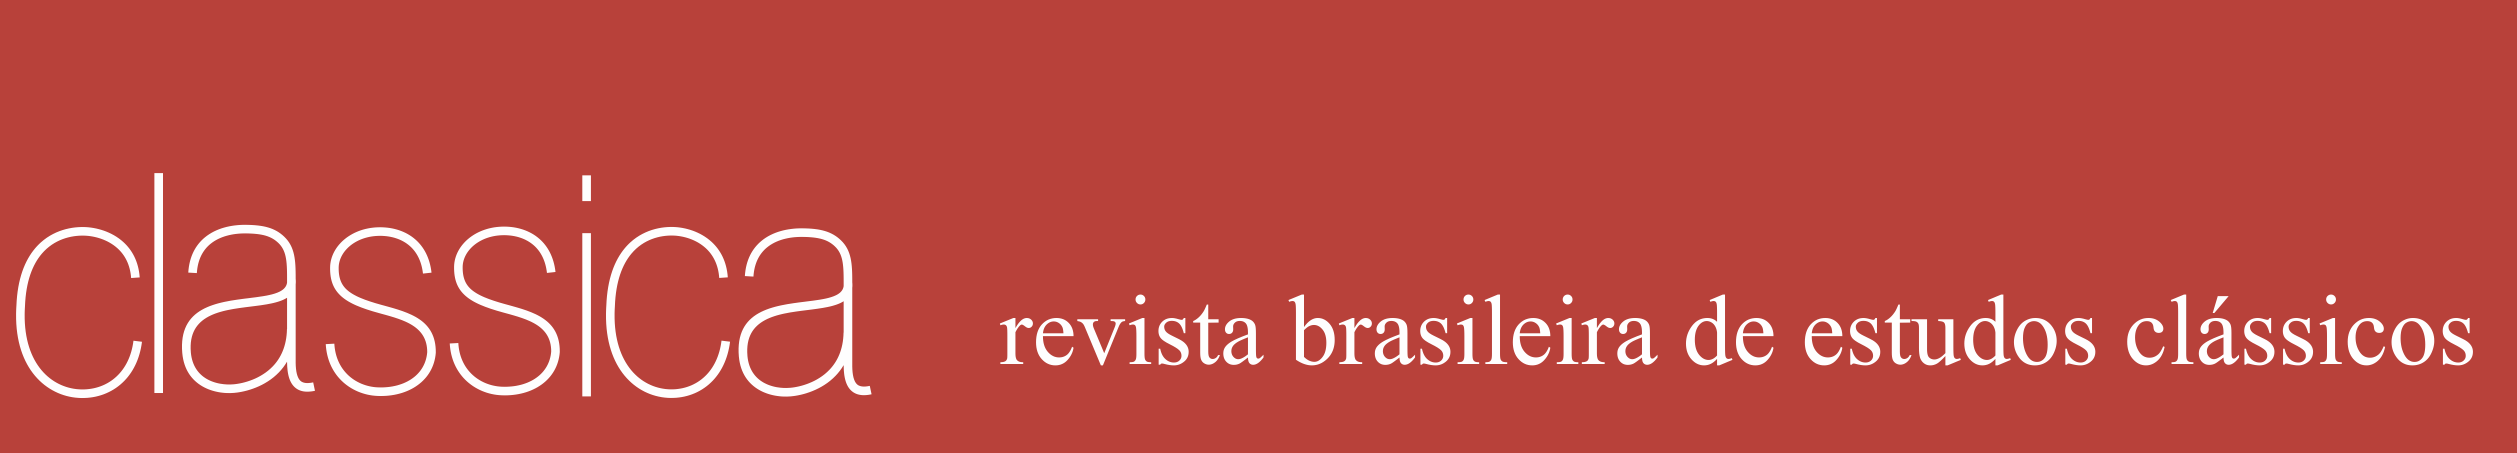 "Classica revista brasileira de estudos clássicos" em fonte braca e fundo vermelho.